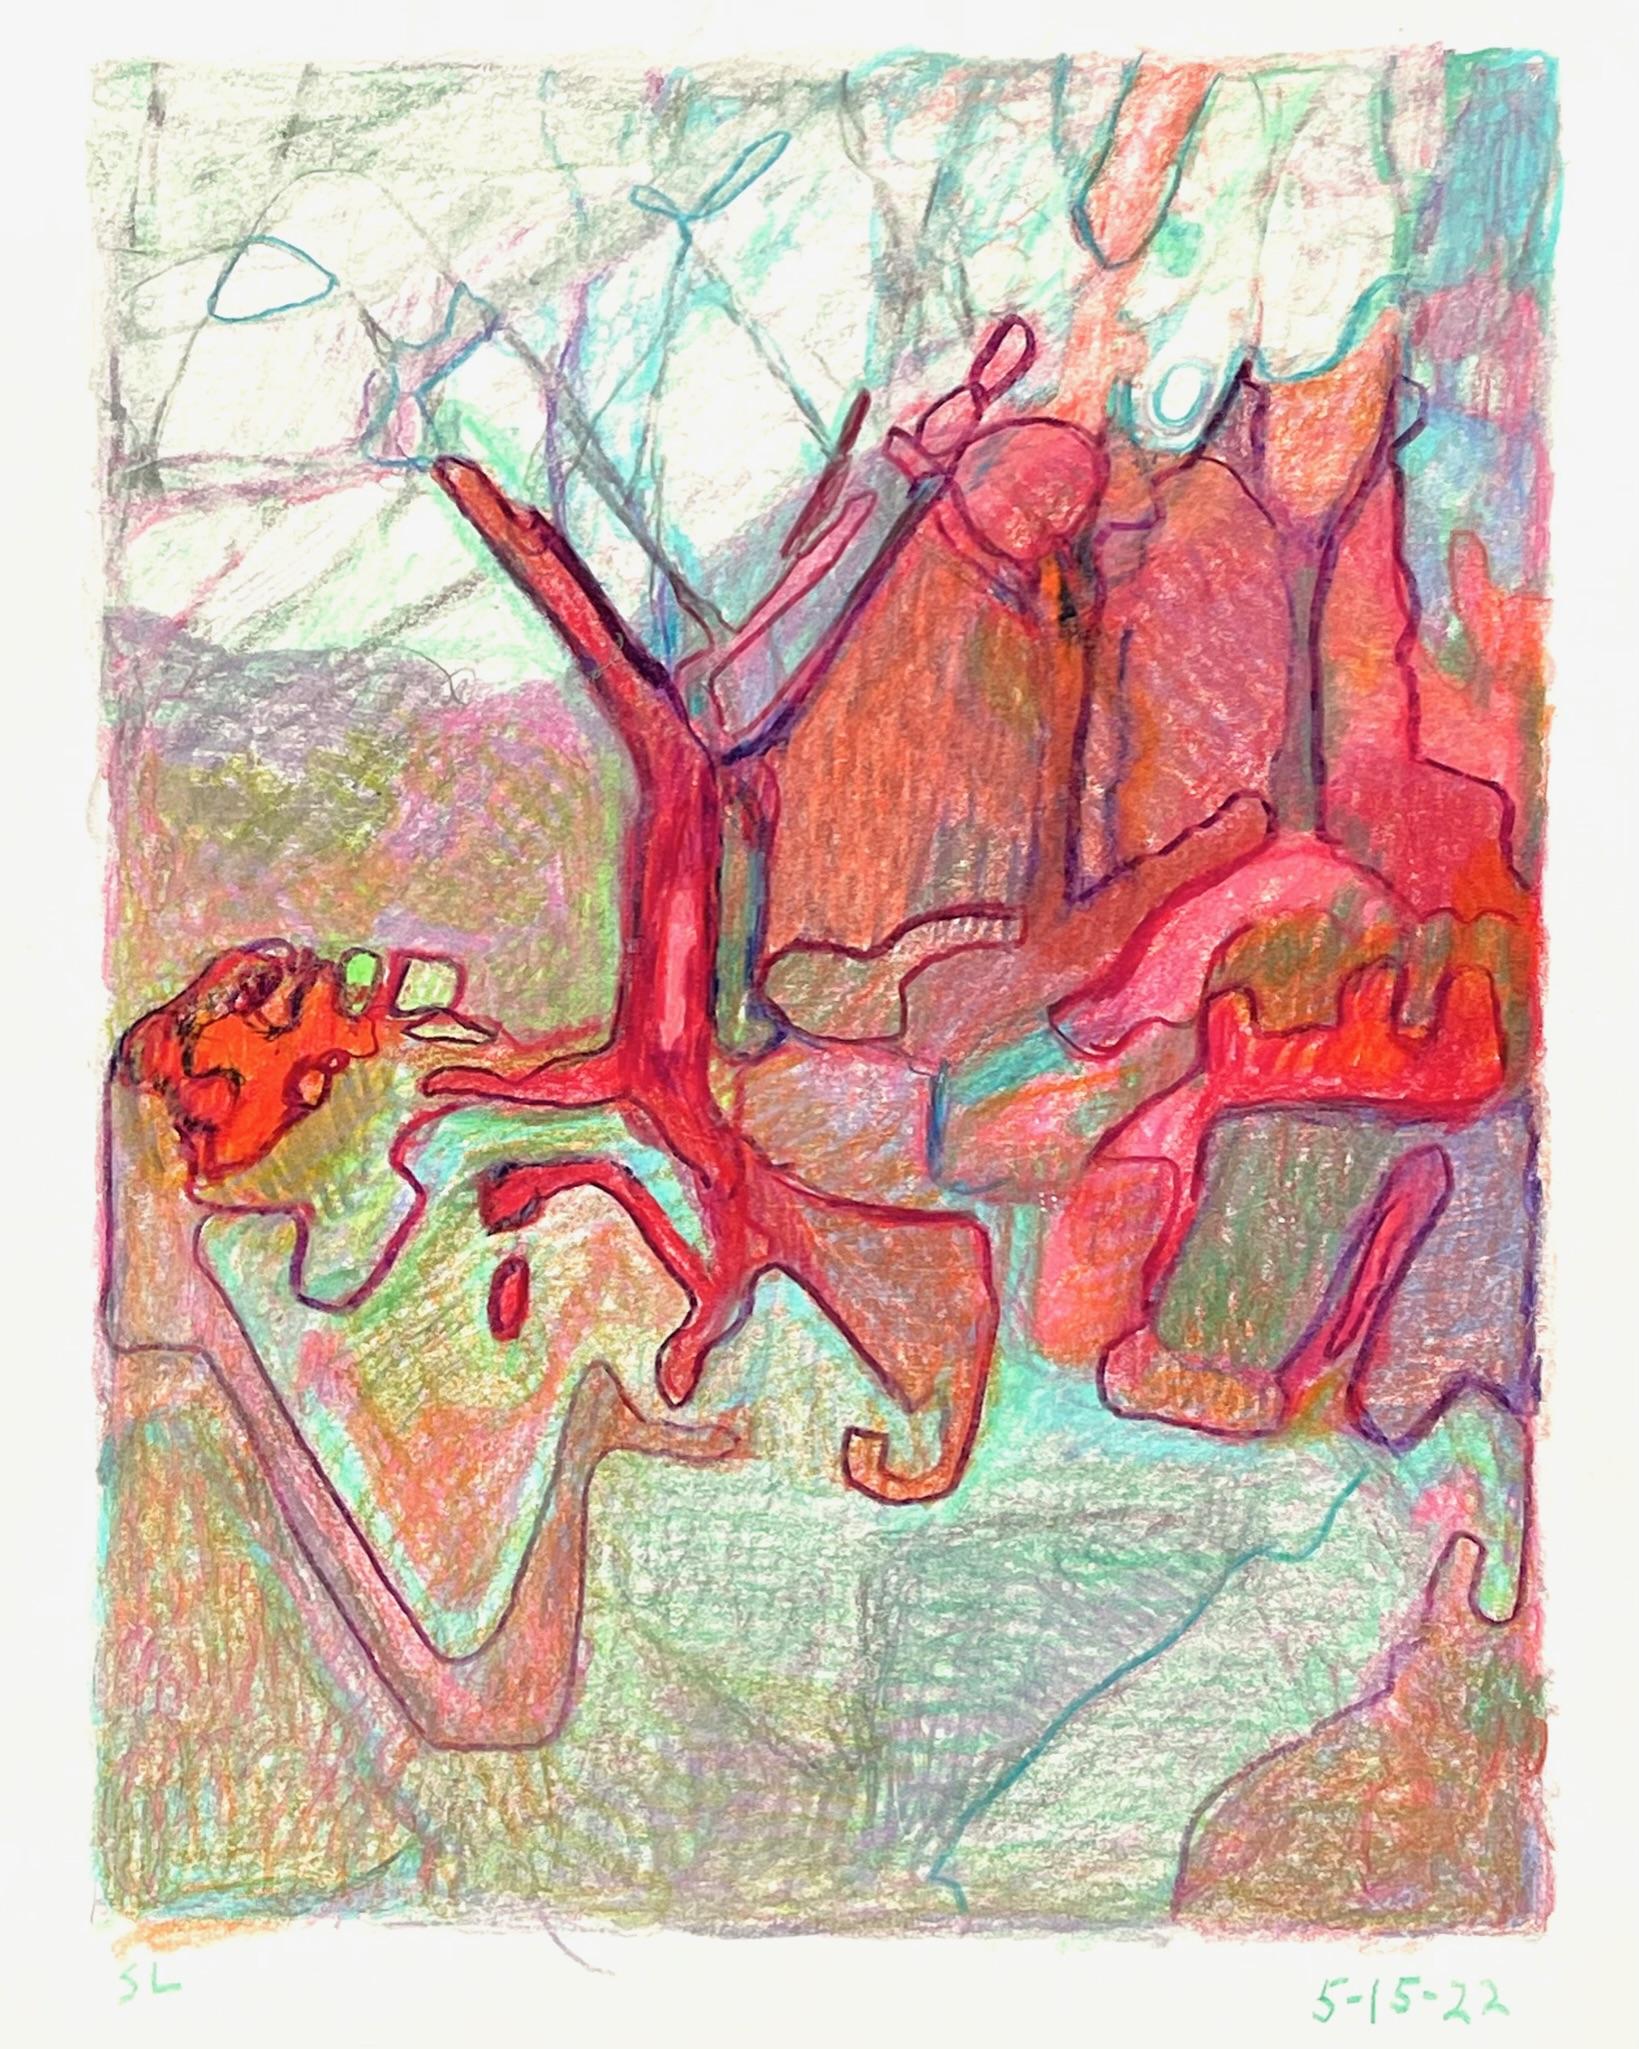 Abstract Drawing Sandy Litchfield - 5-15-22, dessin de paysage abstrait impressionniste au crayon en couleur